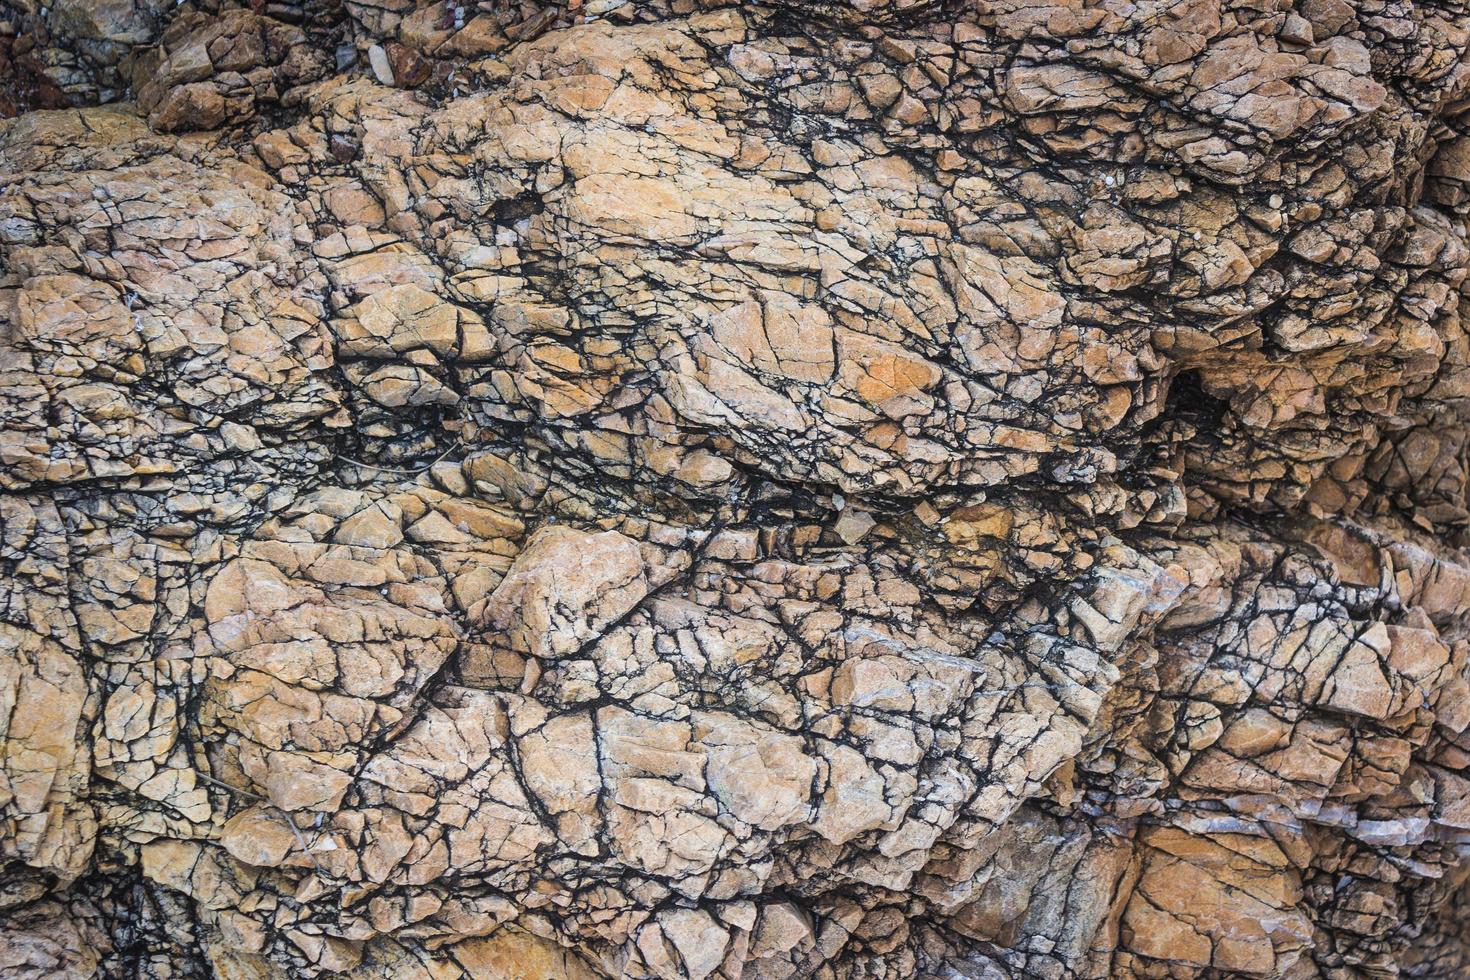 superfície da rocha para textura ou fundo foto